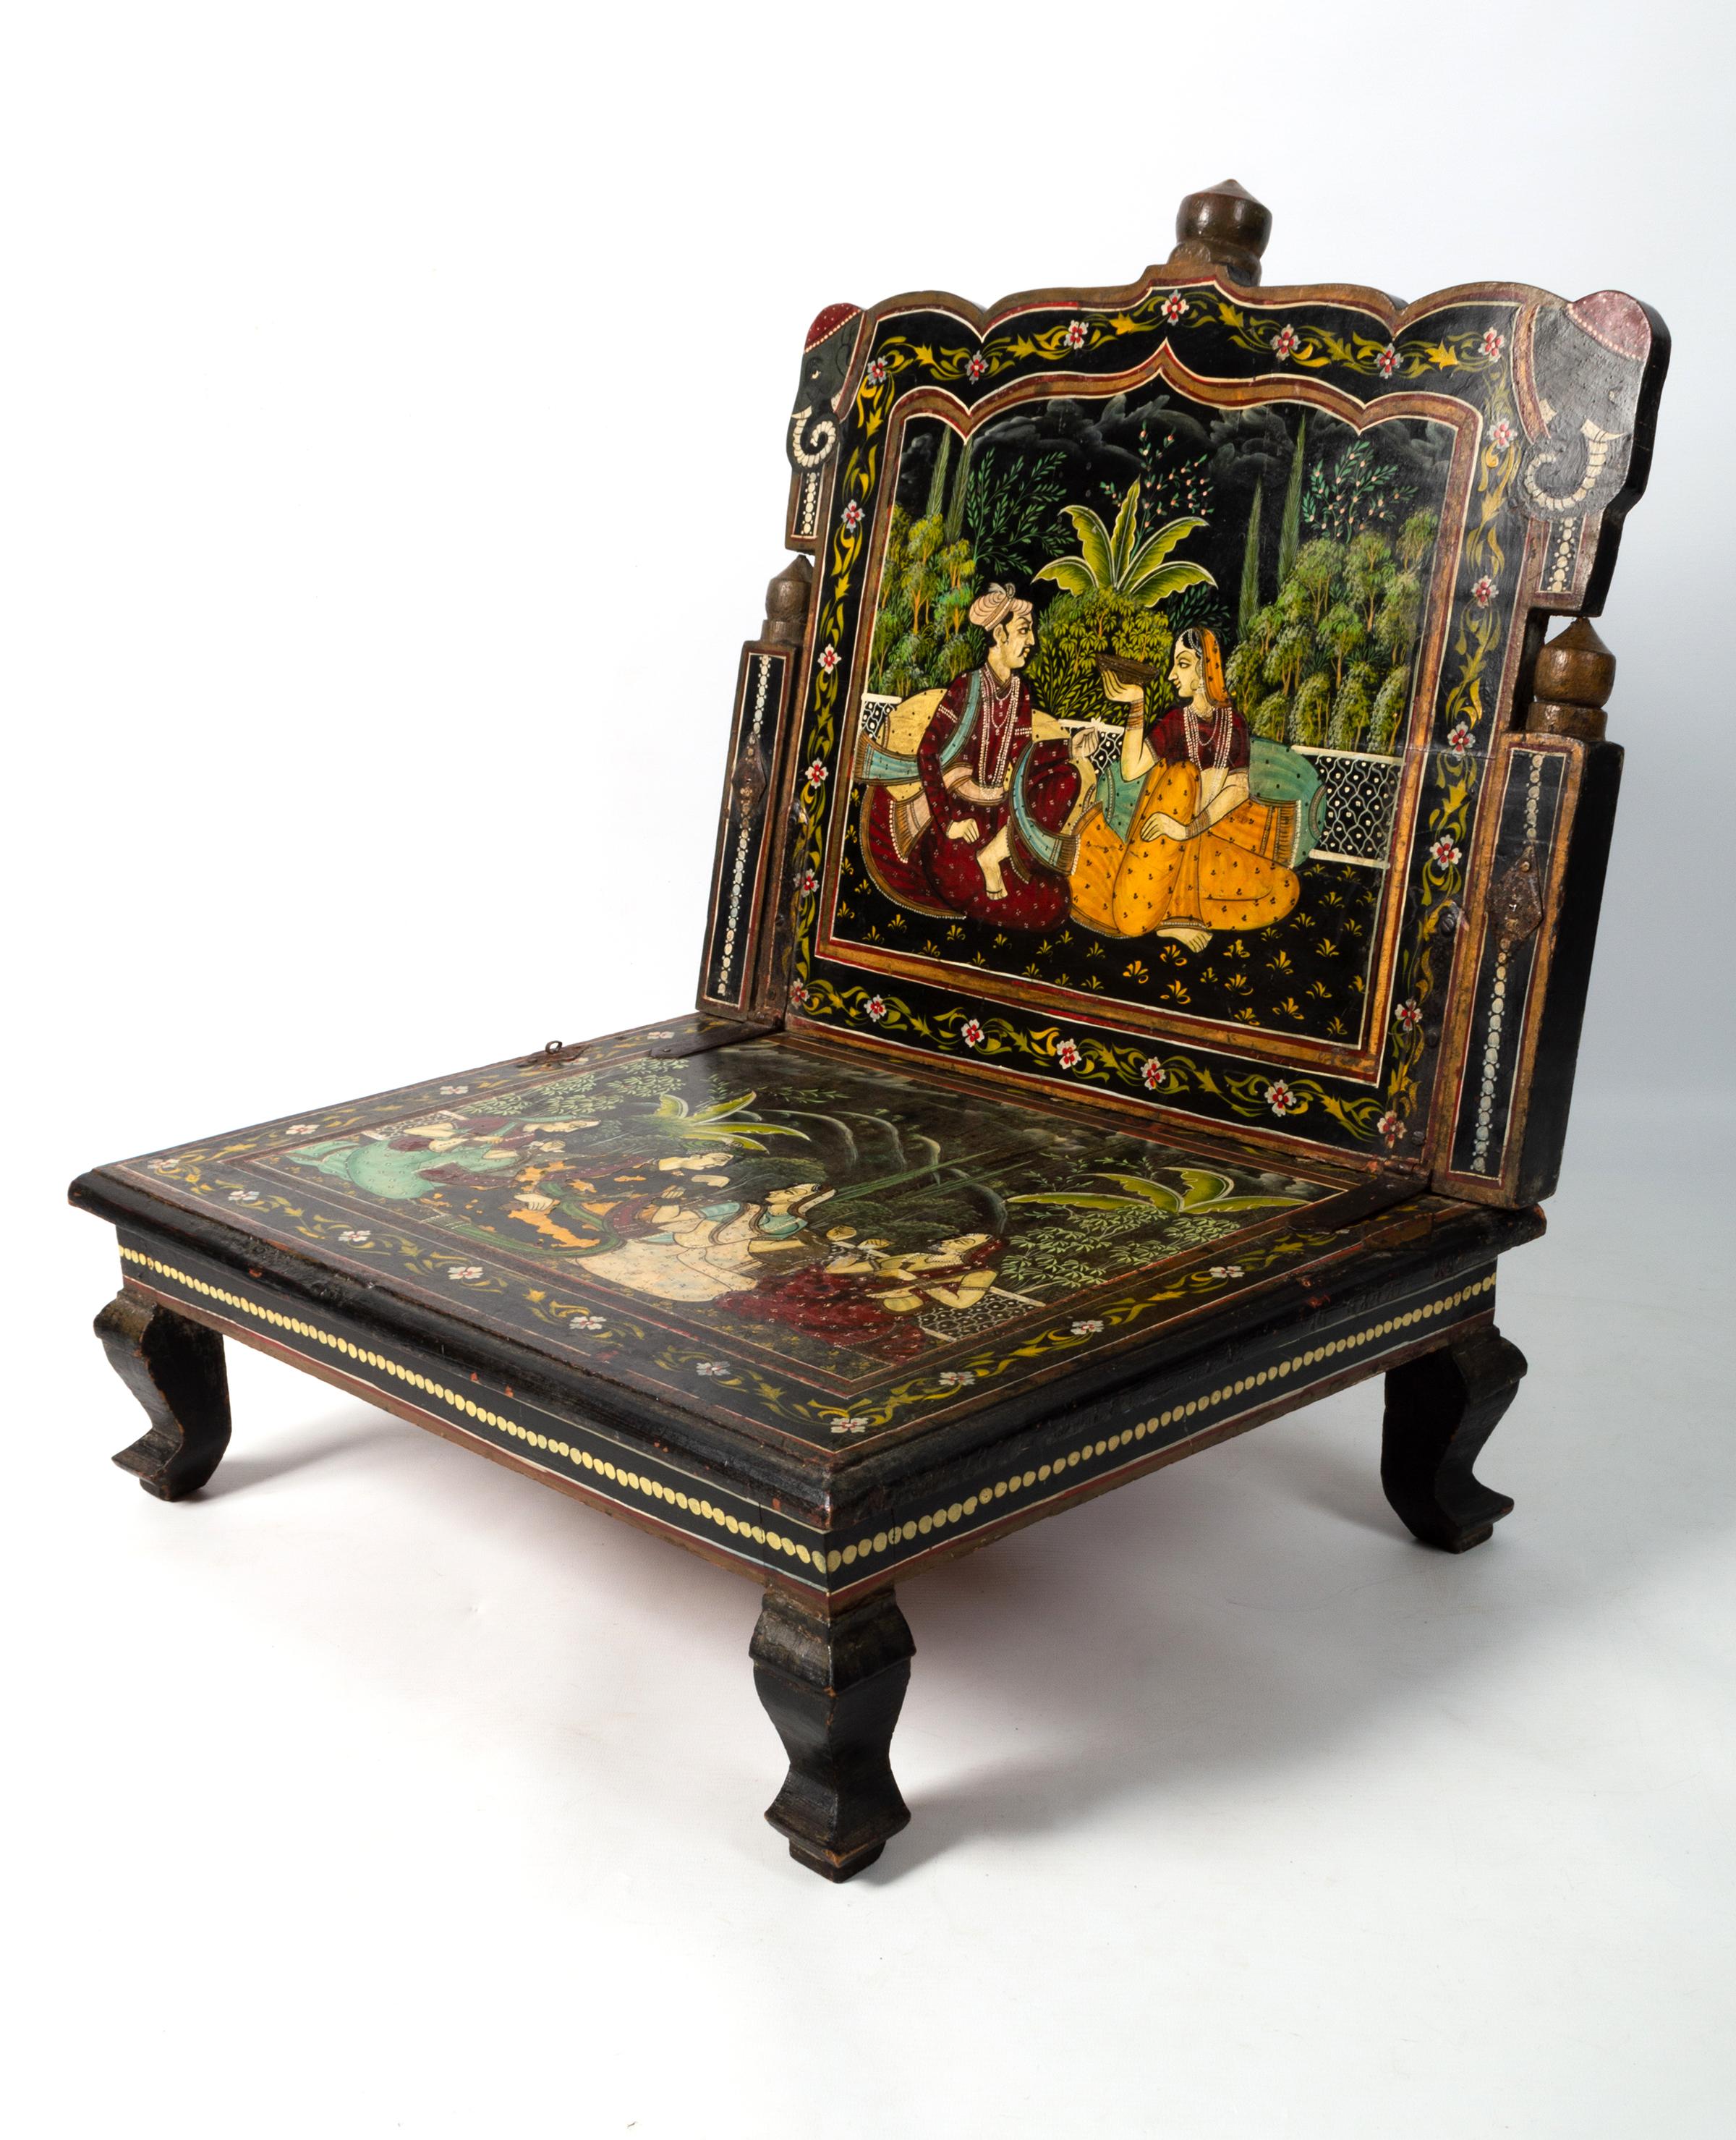 Antike Anglo-Indian Rajasthani gemalt Mughal Szene Folding dekorativen Stuhl C.1920

Ein wunderbares Dekorationsstück. Strukturell solide, fehlende Haken an der Rückenlehne, daher für dekorative Zwecke und nicht für allgemeine Sitzgelegenheiten